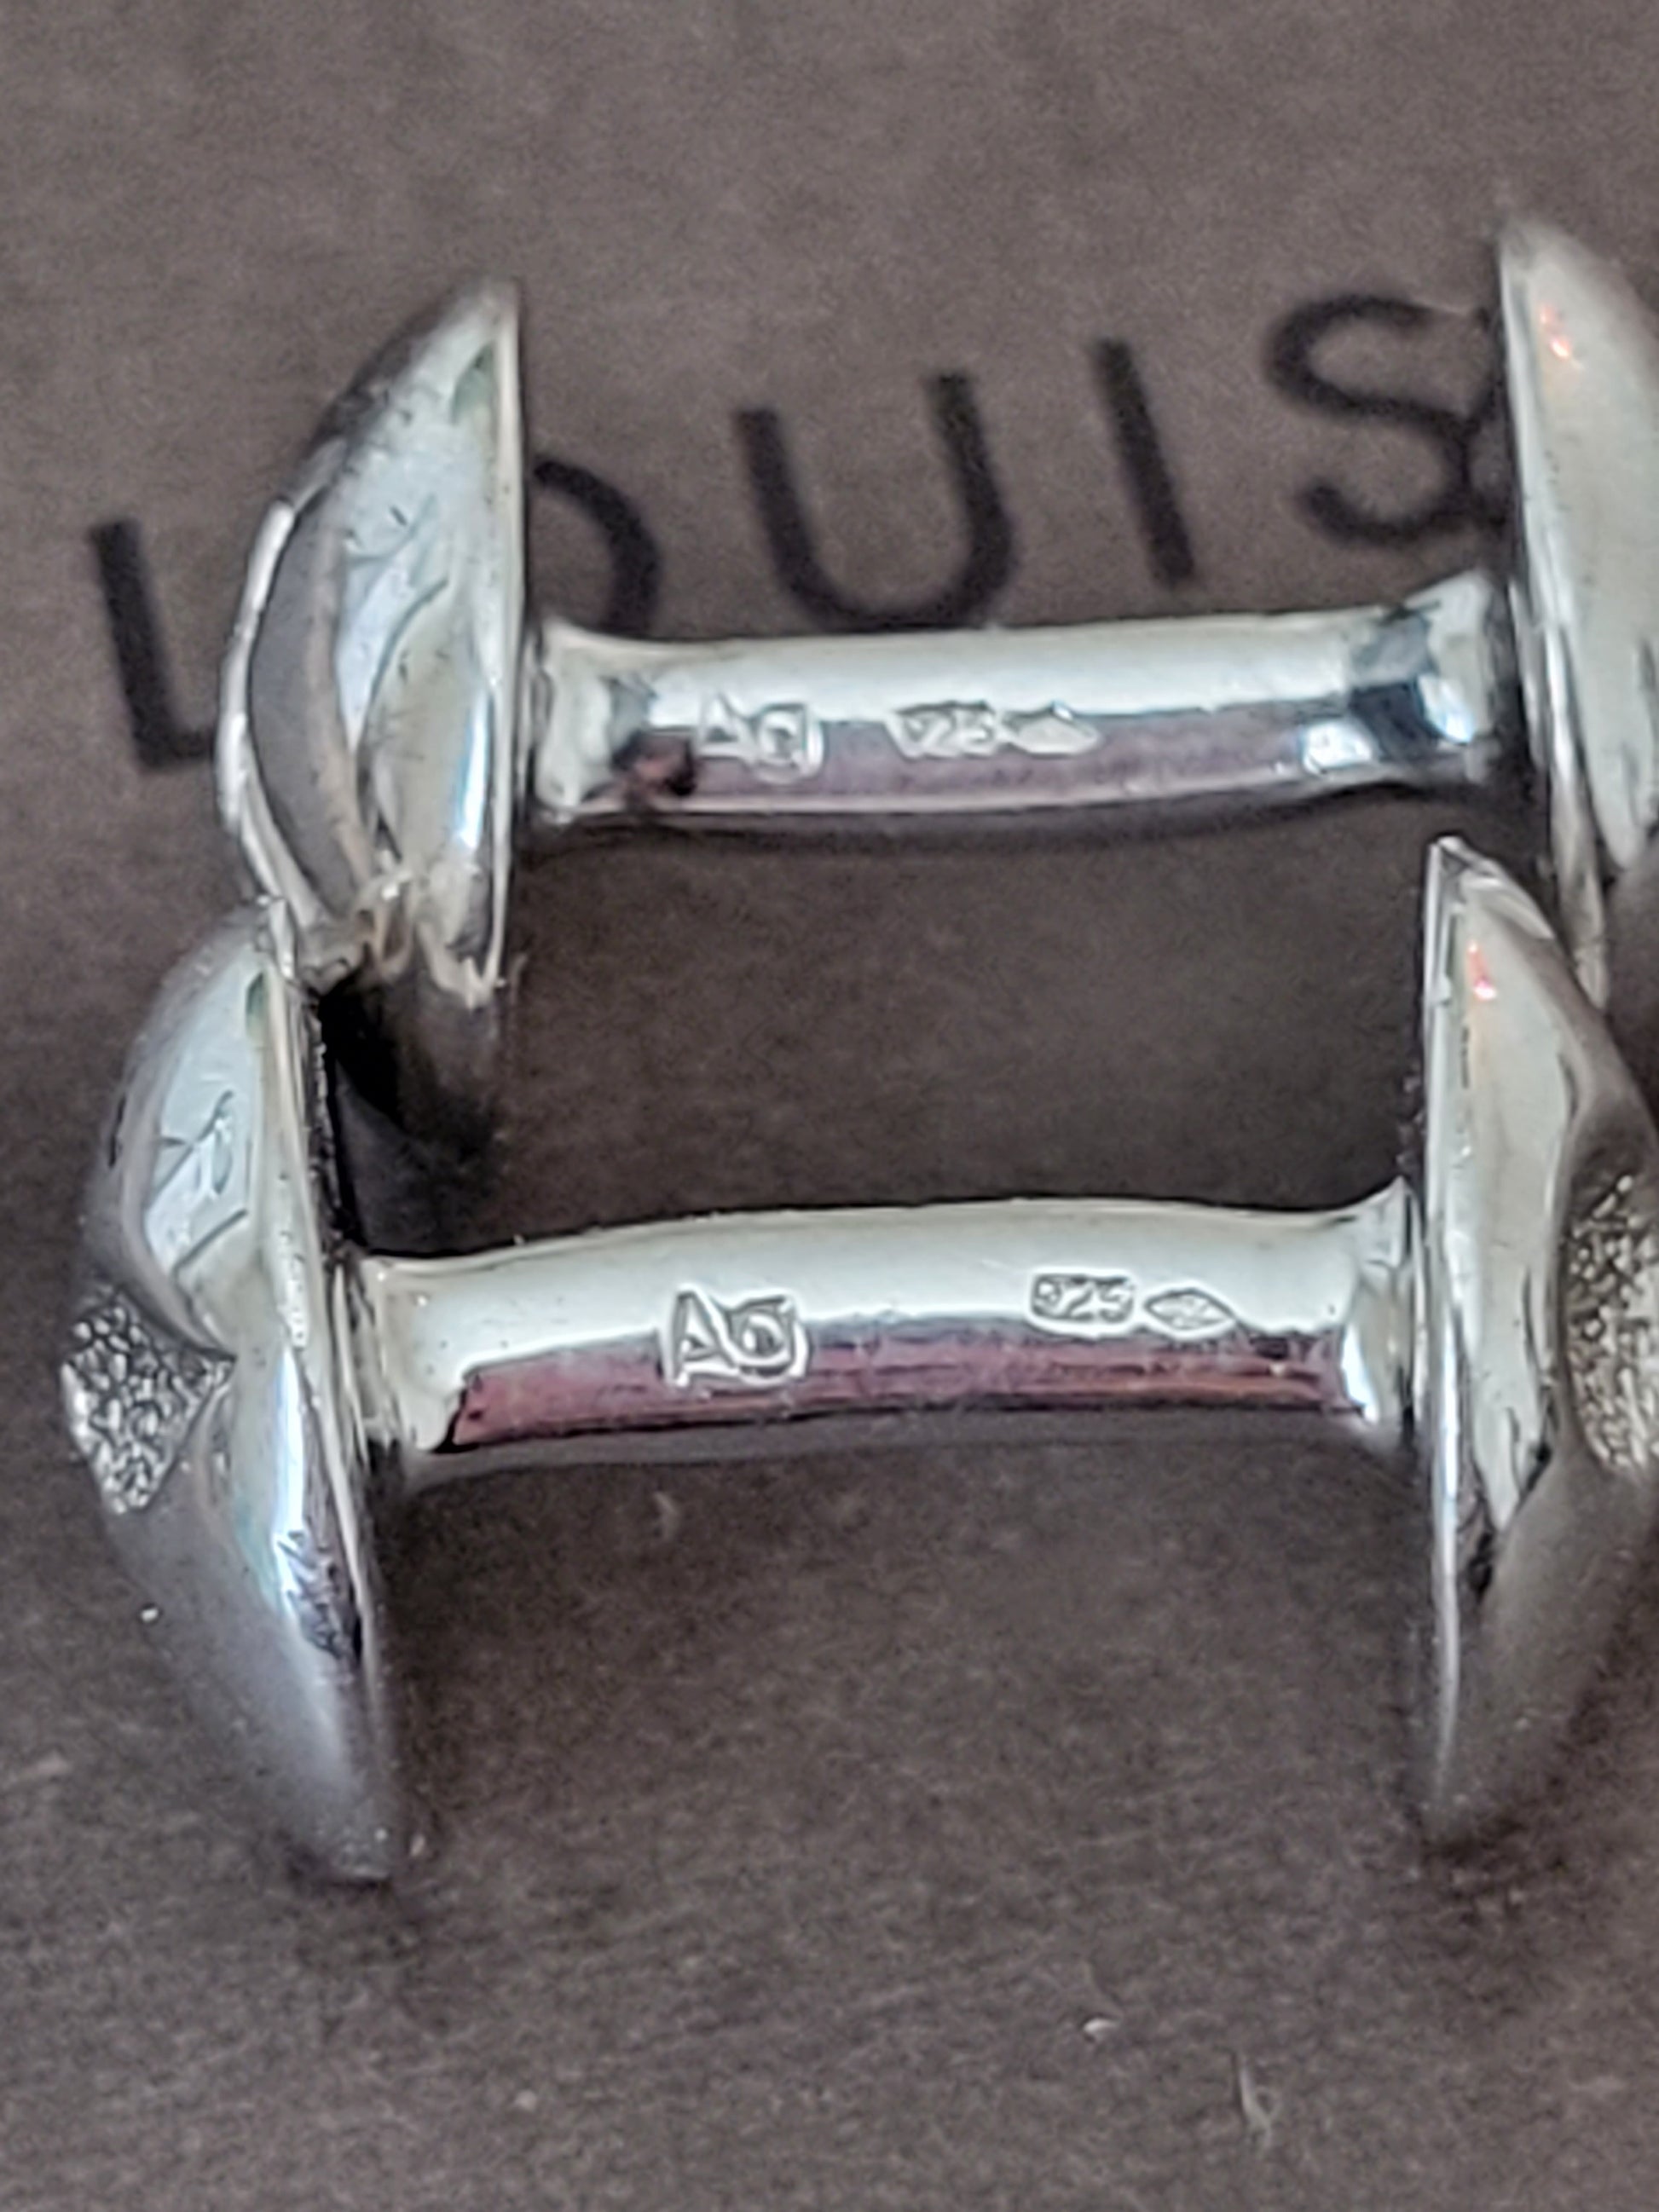 Louis Vuitton Silver 925 Boutons de Manchette Cufflinks Monogram Men Y1052